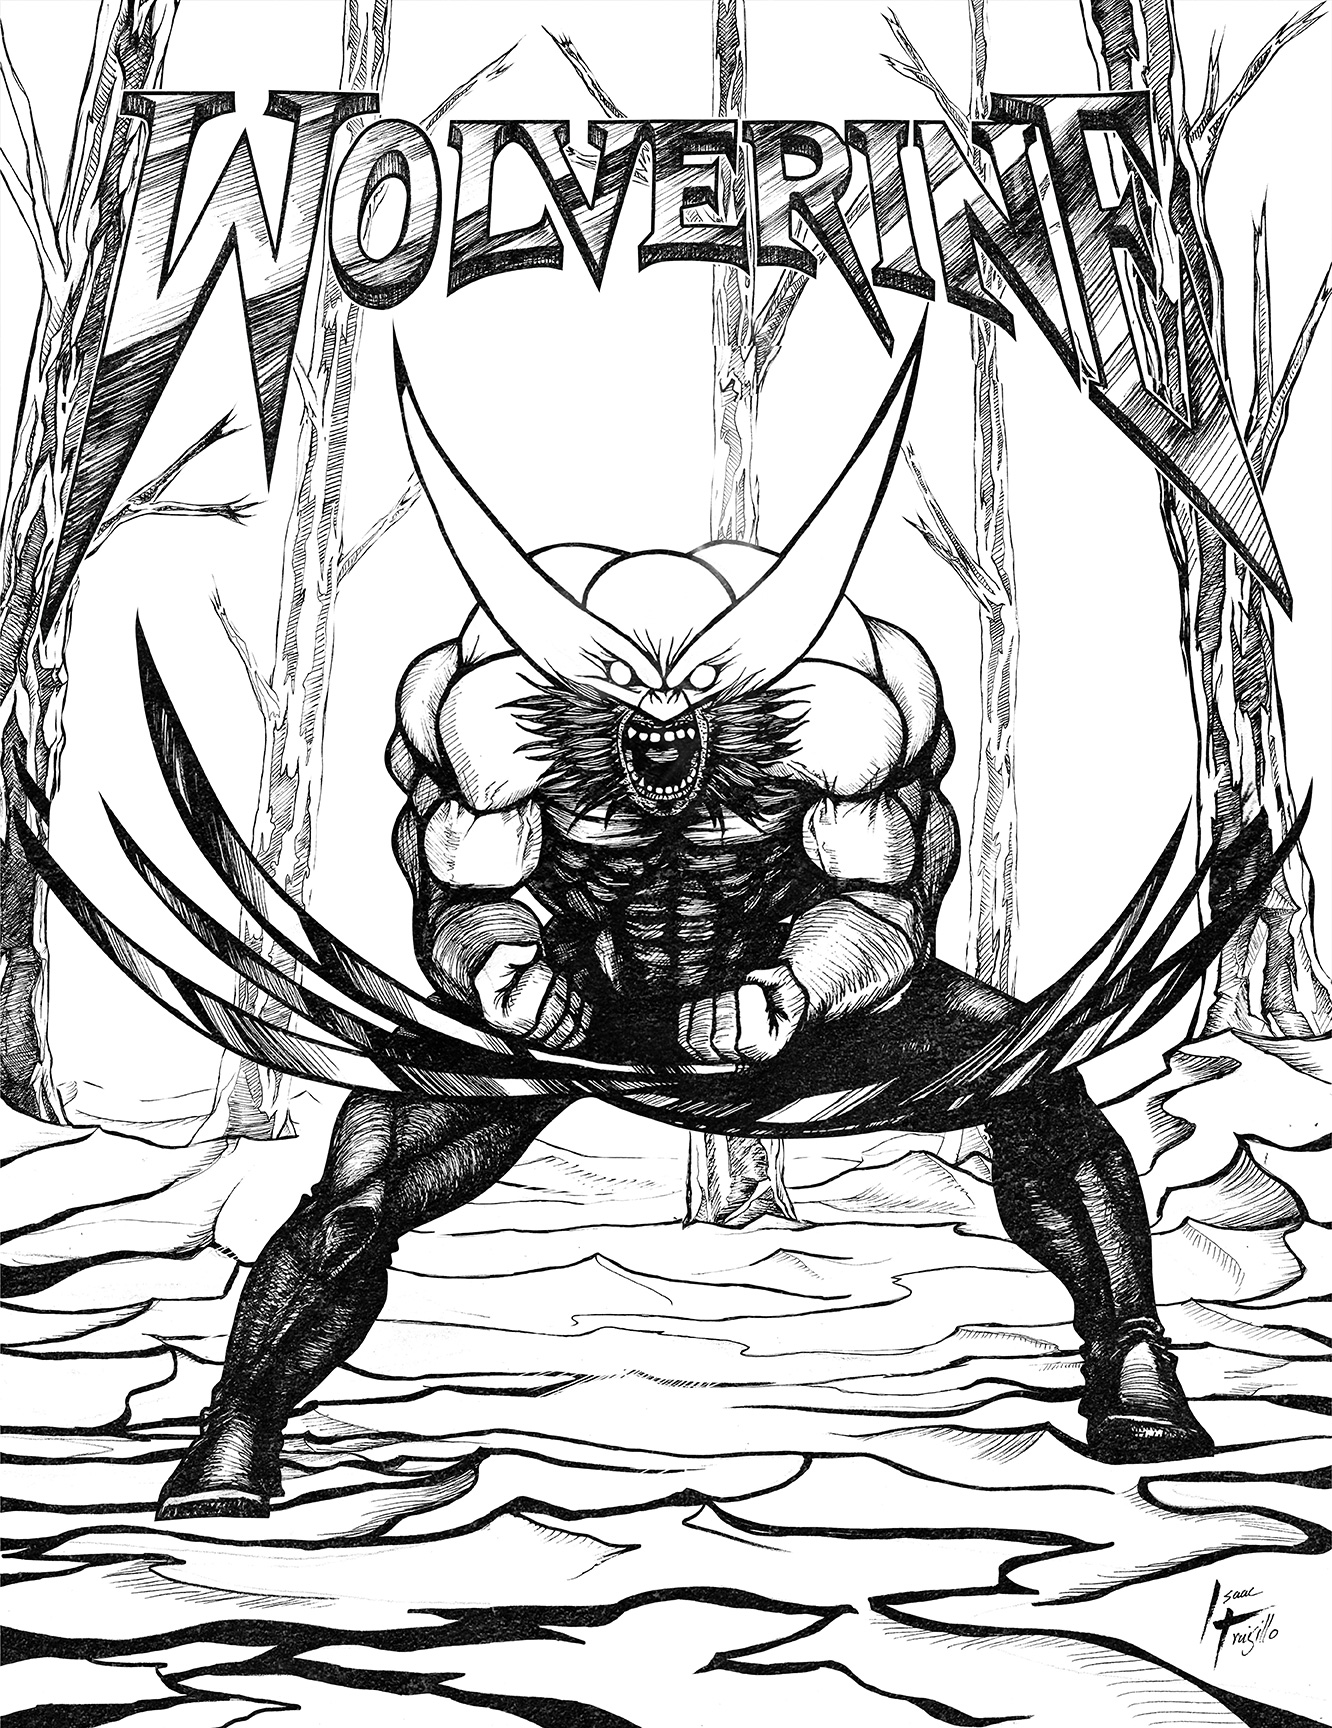 The Berserker "Wolverine"